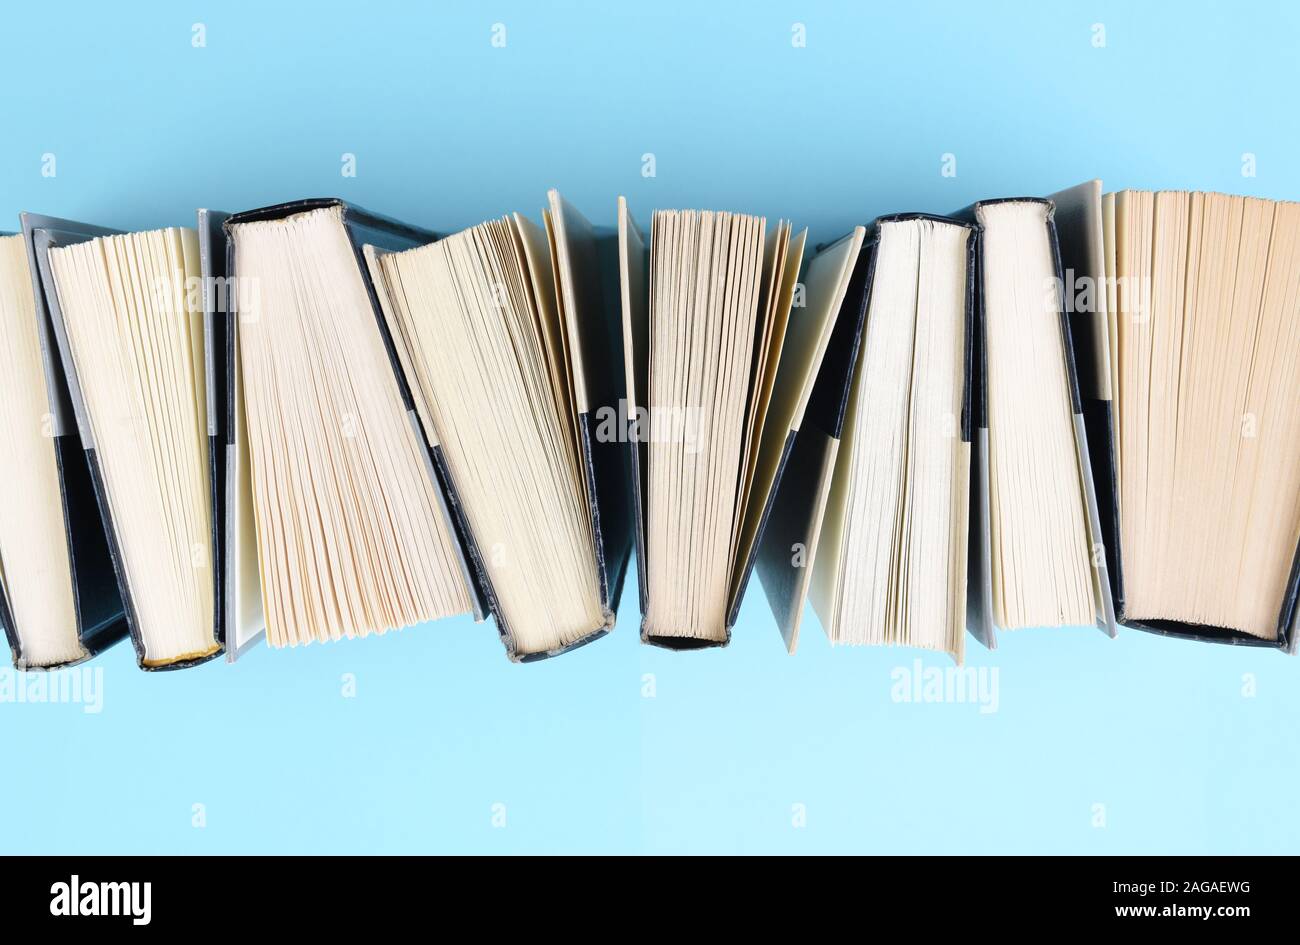 High angle droit d'une rangée de livres debout sur fin sur un fond bleu clair. Banque D'Images